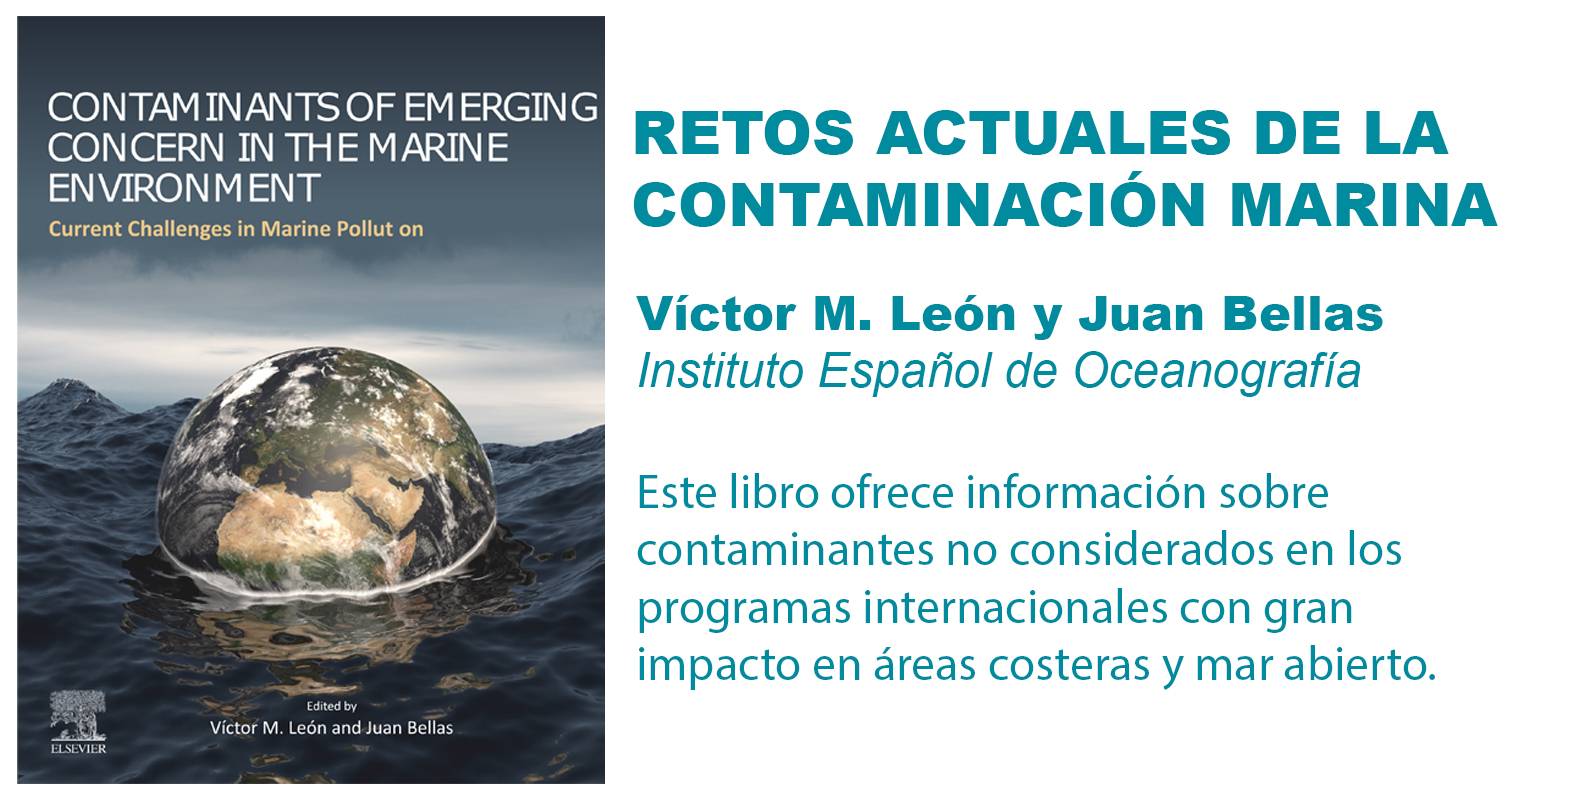 El libro "Retos actuales de la contaminación marina" ofrece información sobre contaminantes no considerados en los programas internacionales.